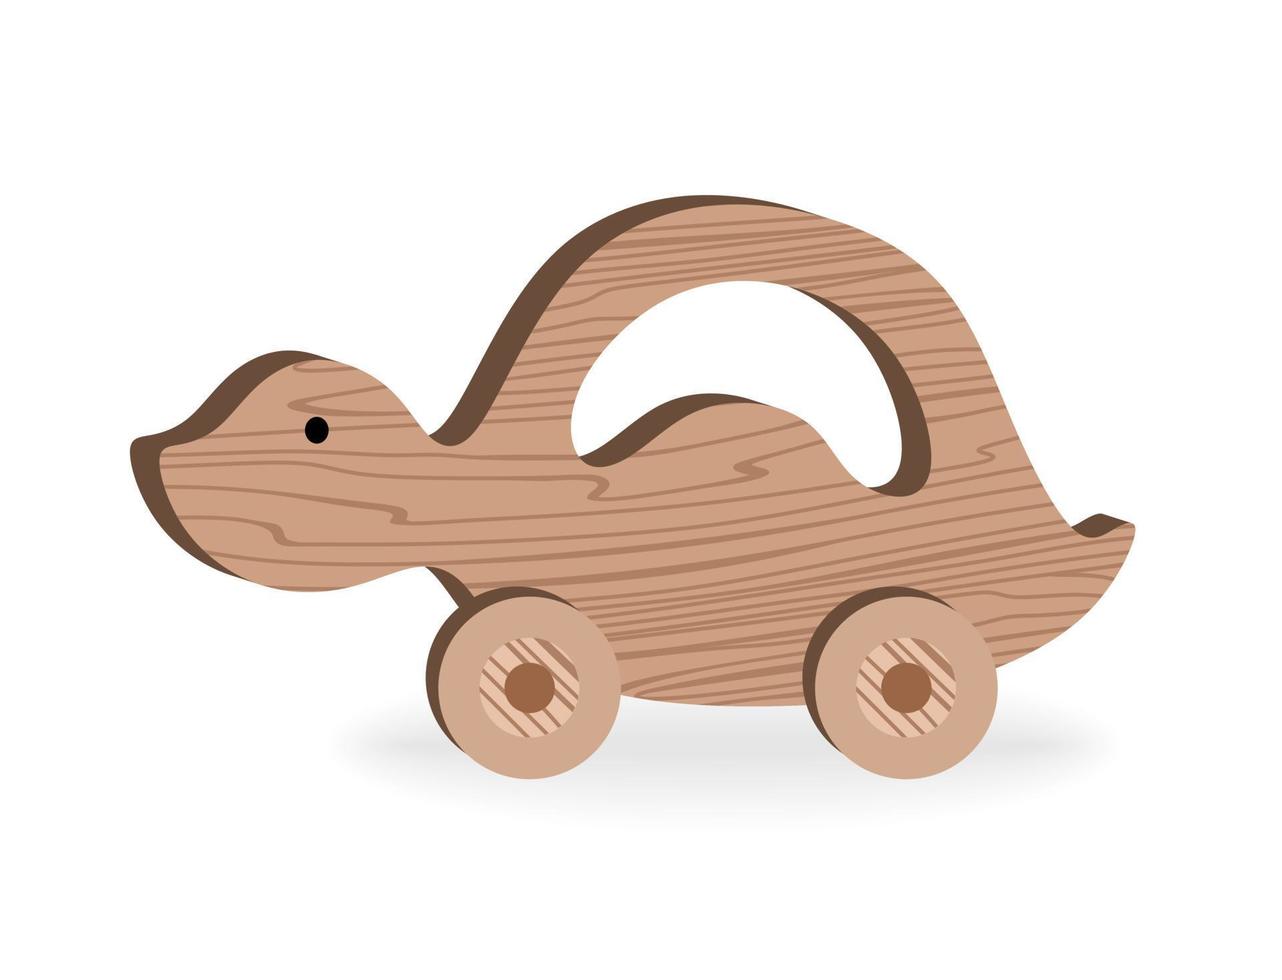 brinquedos infantis para jogos infantis e entretenimento desenhos animados brinquedos de madeira tartaruga de madeira ilustração vetorial vetor